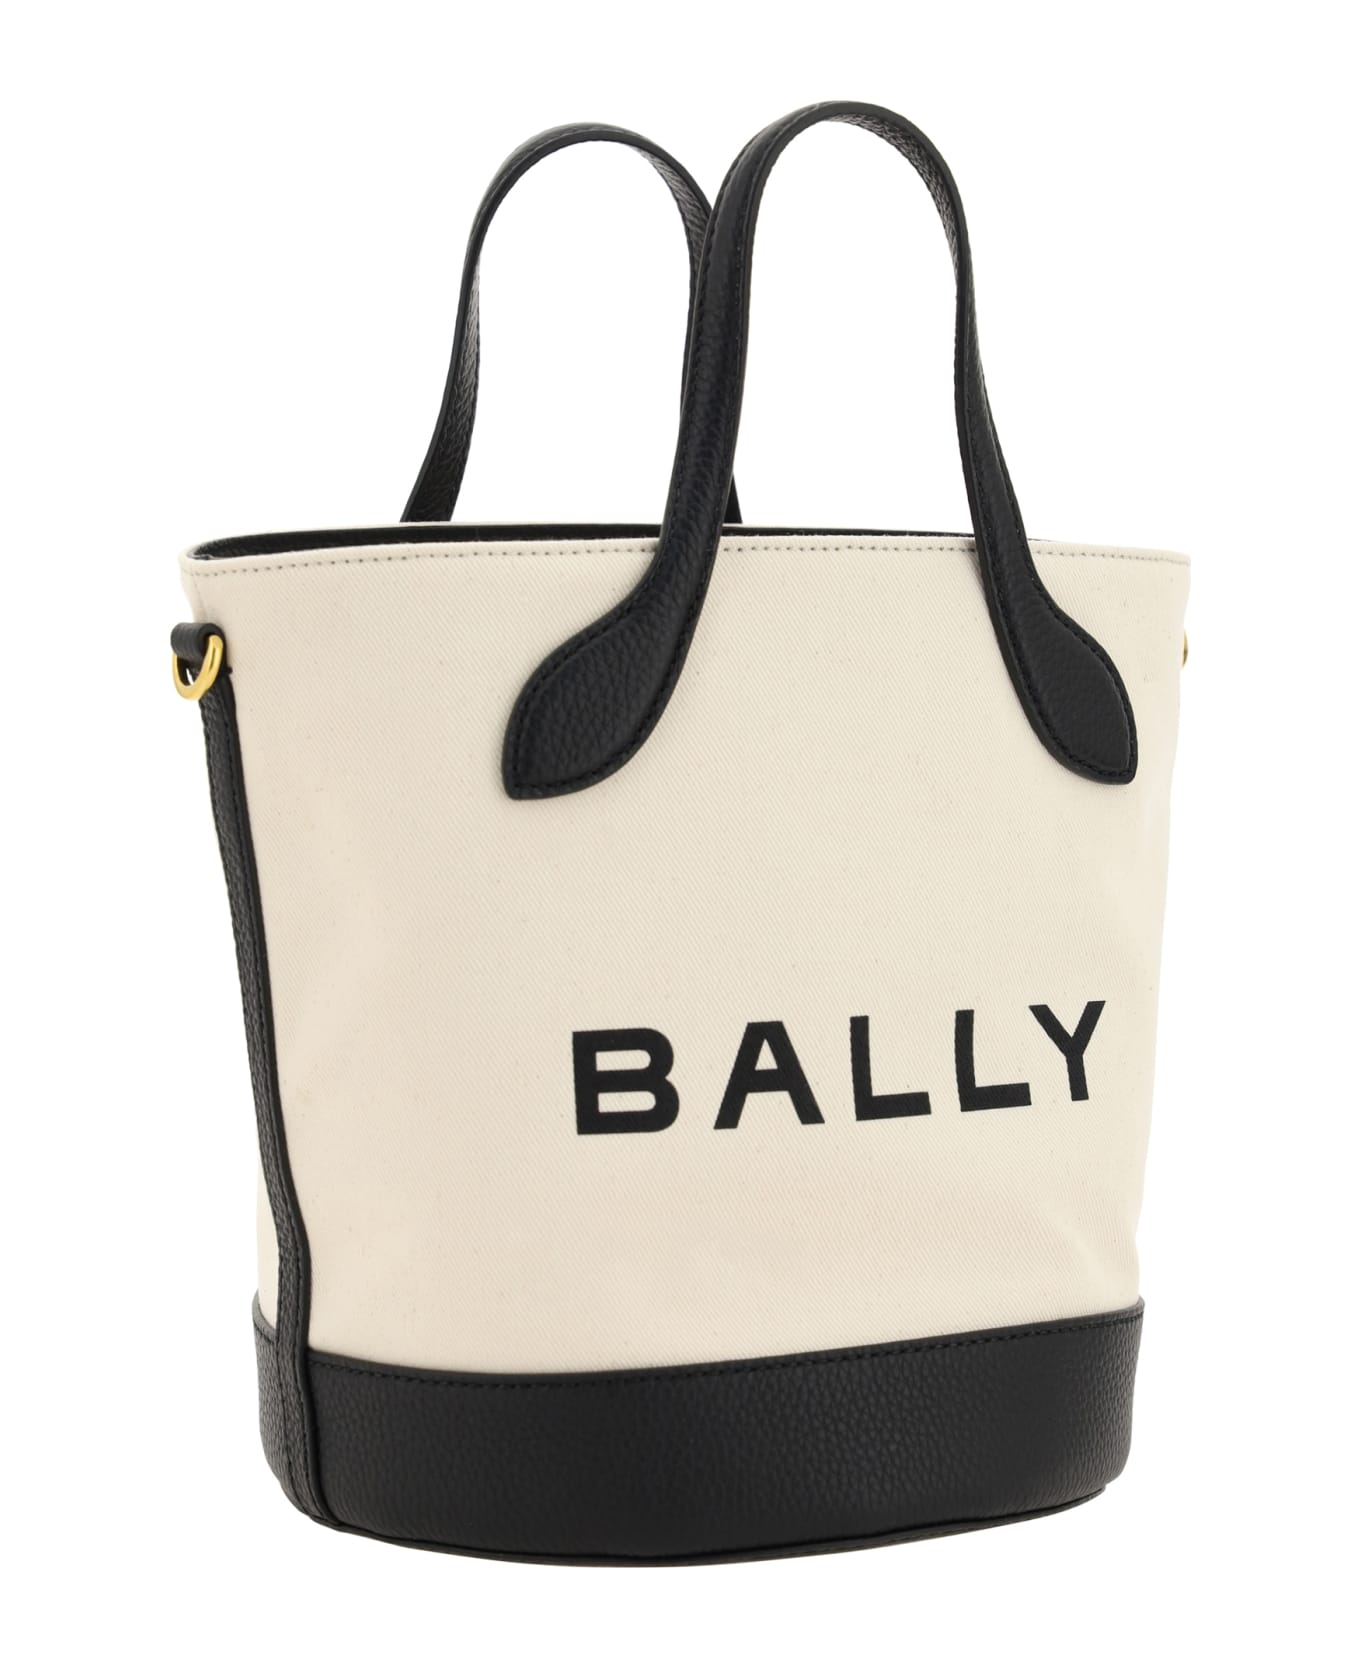 Bally Bucket Bag - Natural